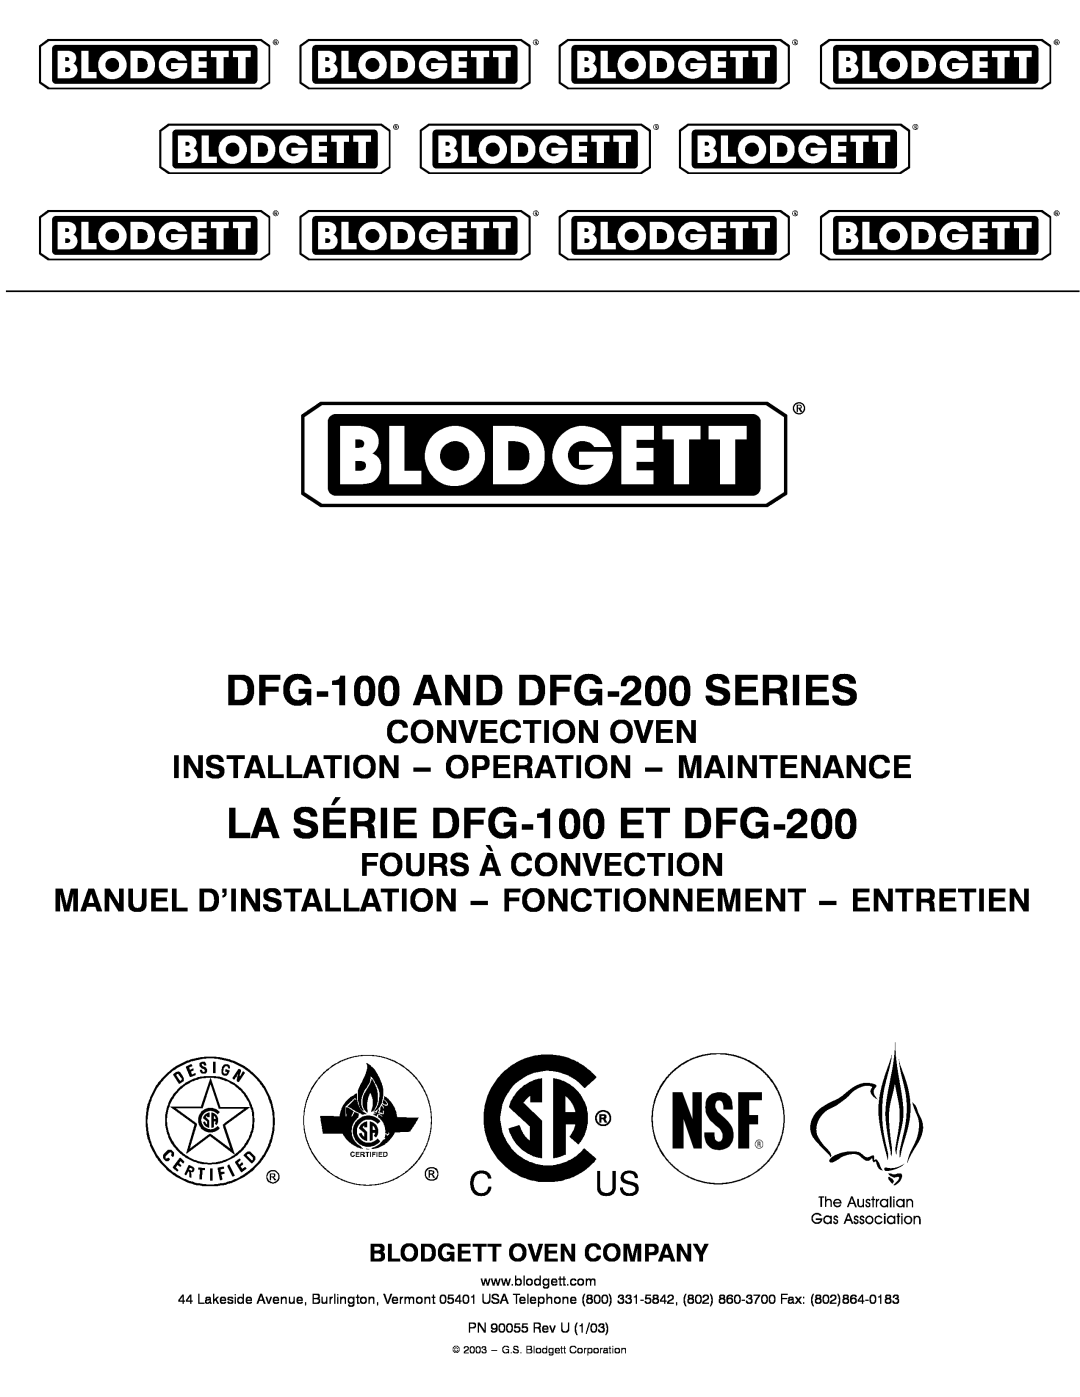 Blodgett manual DFG-100 AND DFG-200 SERIES, LA SÉRIE DFG-100 ET DFG-200, Fours À Convection, Blodgett Oven Company 